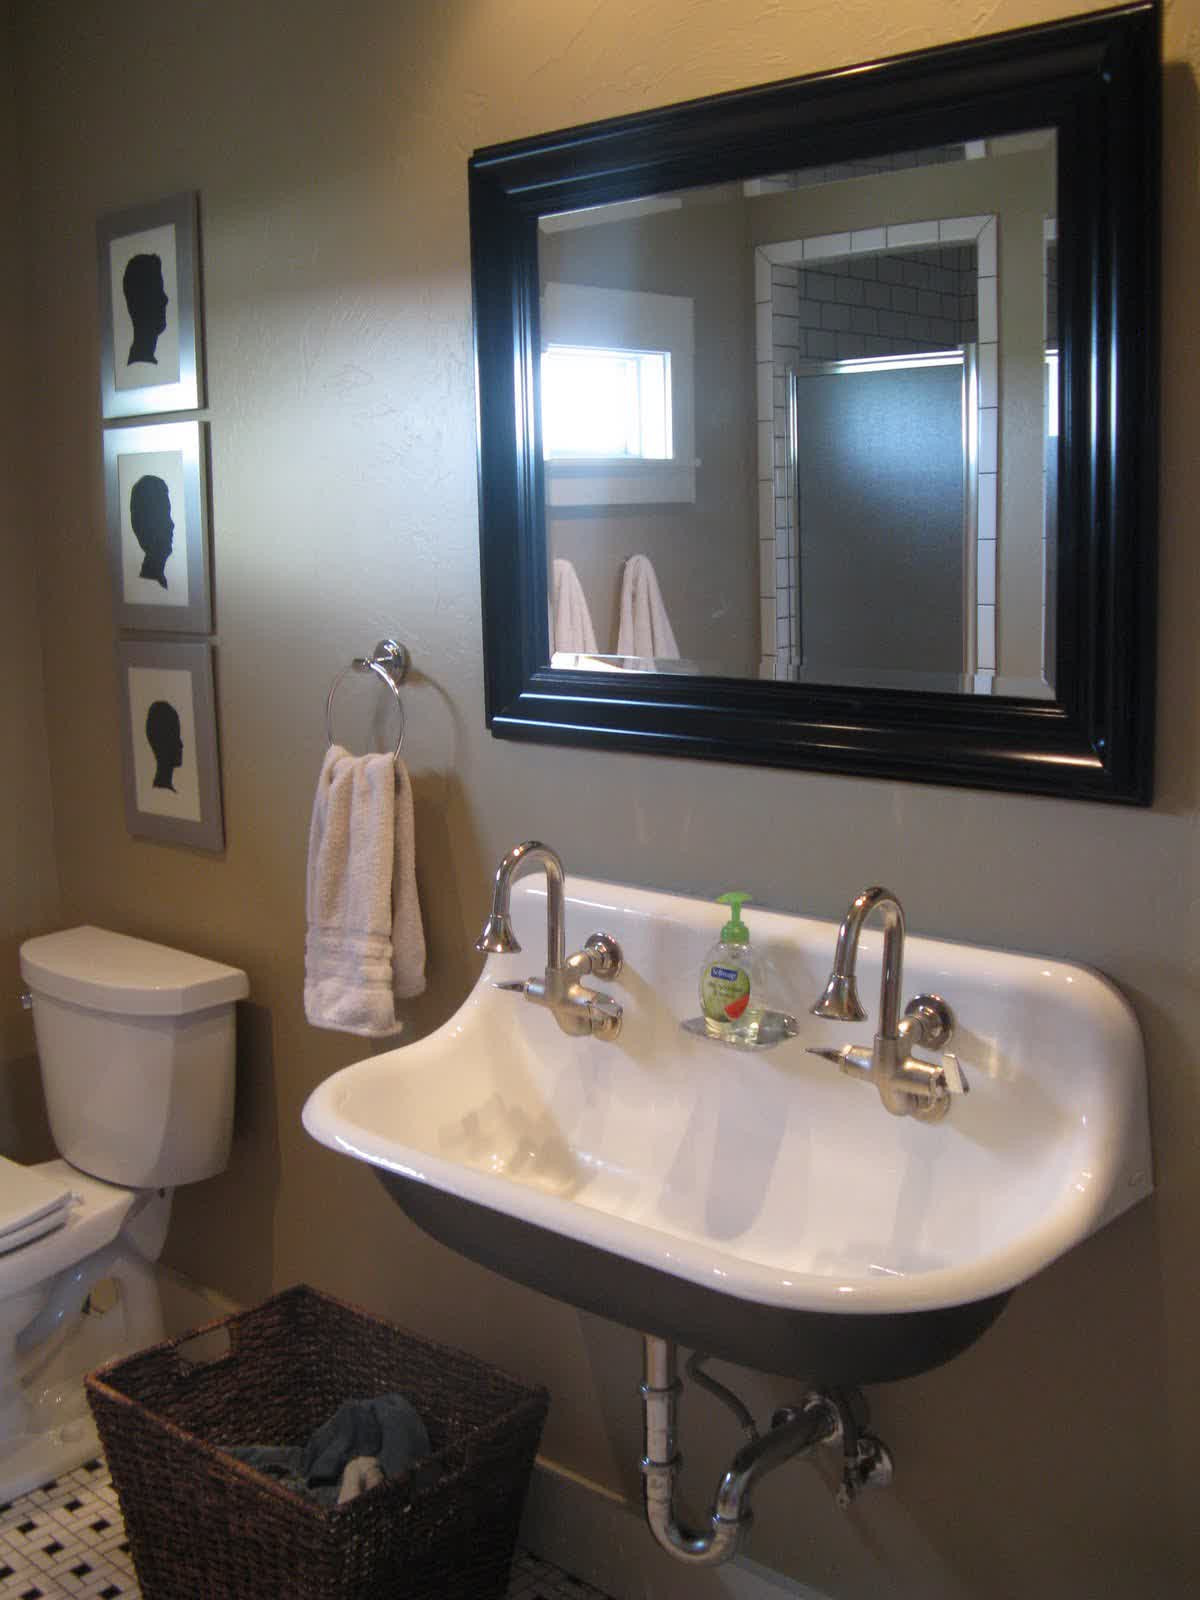 Kohler Bathroom Vanity
 Kohler Trough Sink for Bathroom – HomesFeed